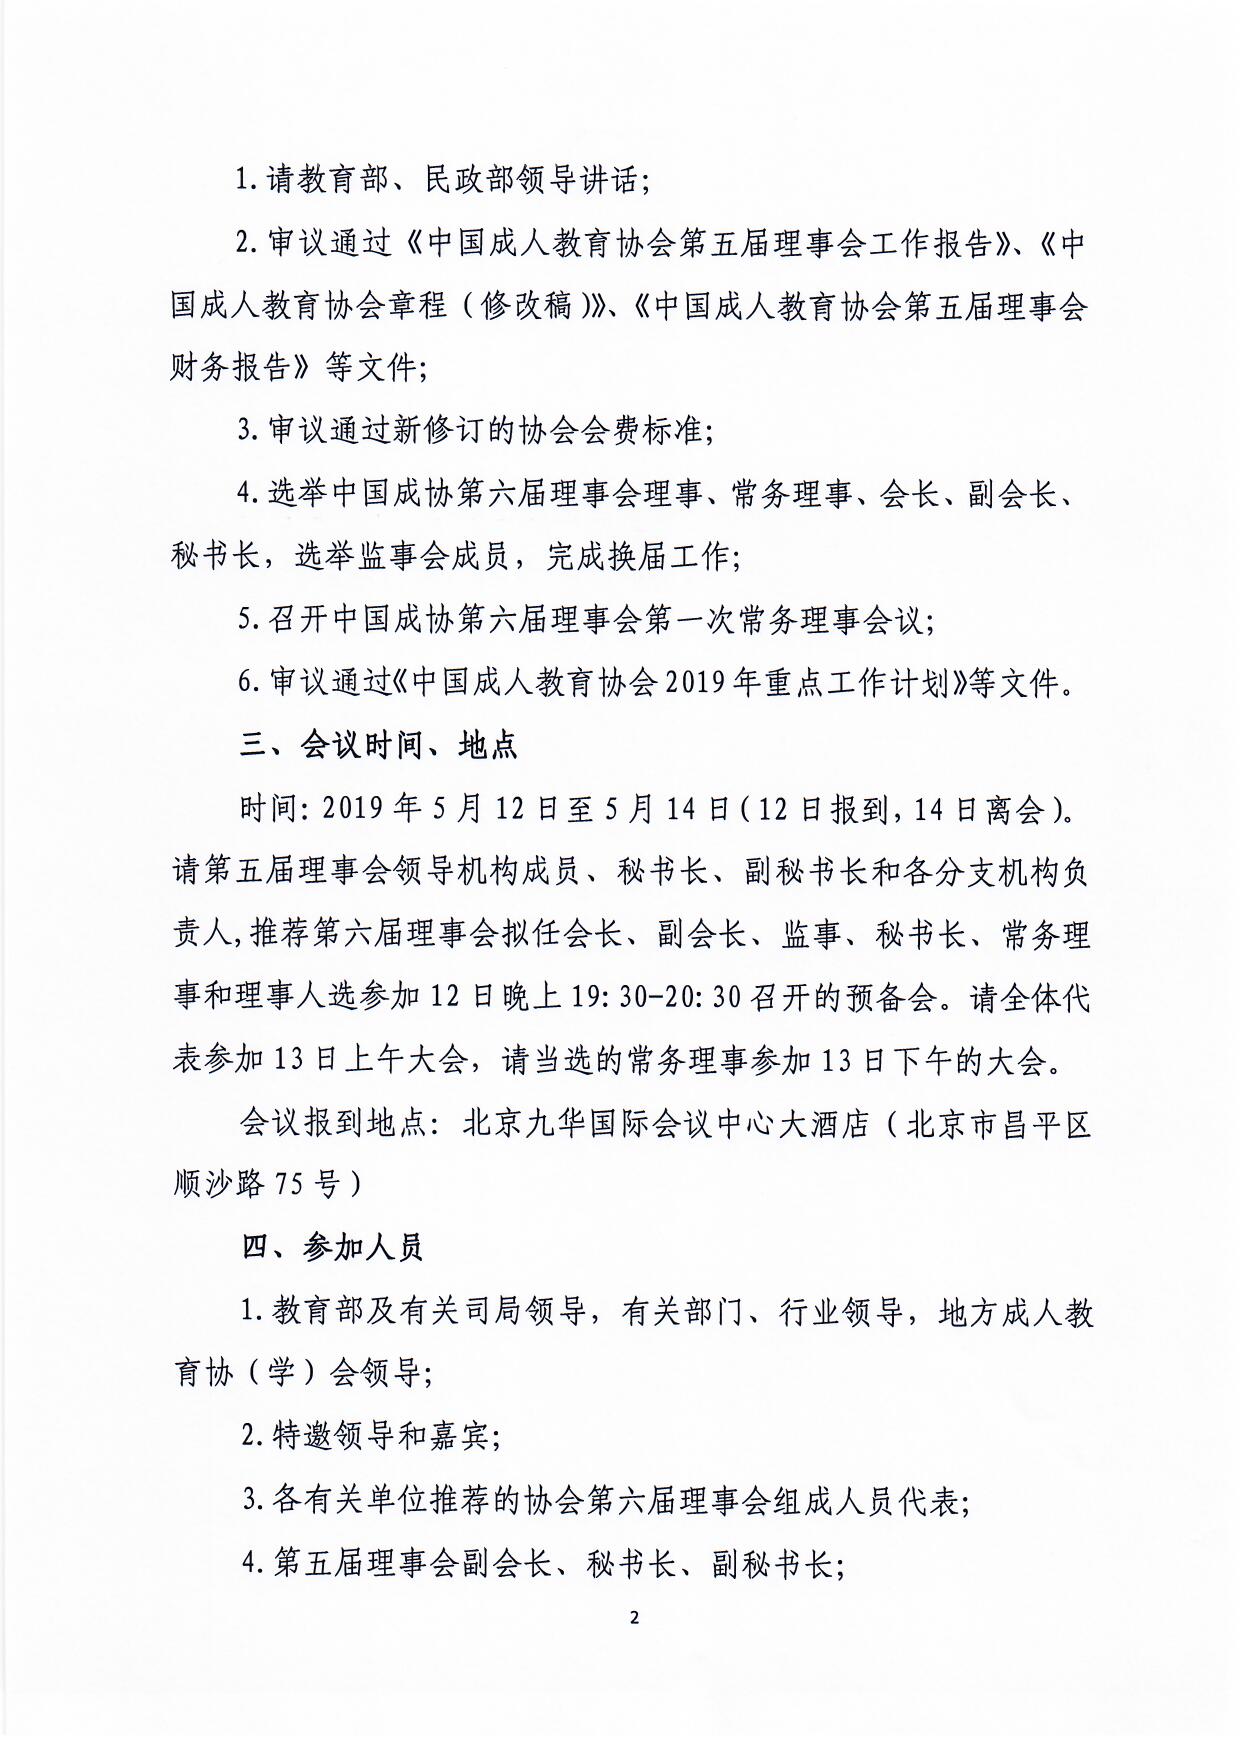 红头019号关于召开中国成人教育协会第六次会员代表大会的通知190506稿_页面_2